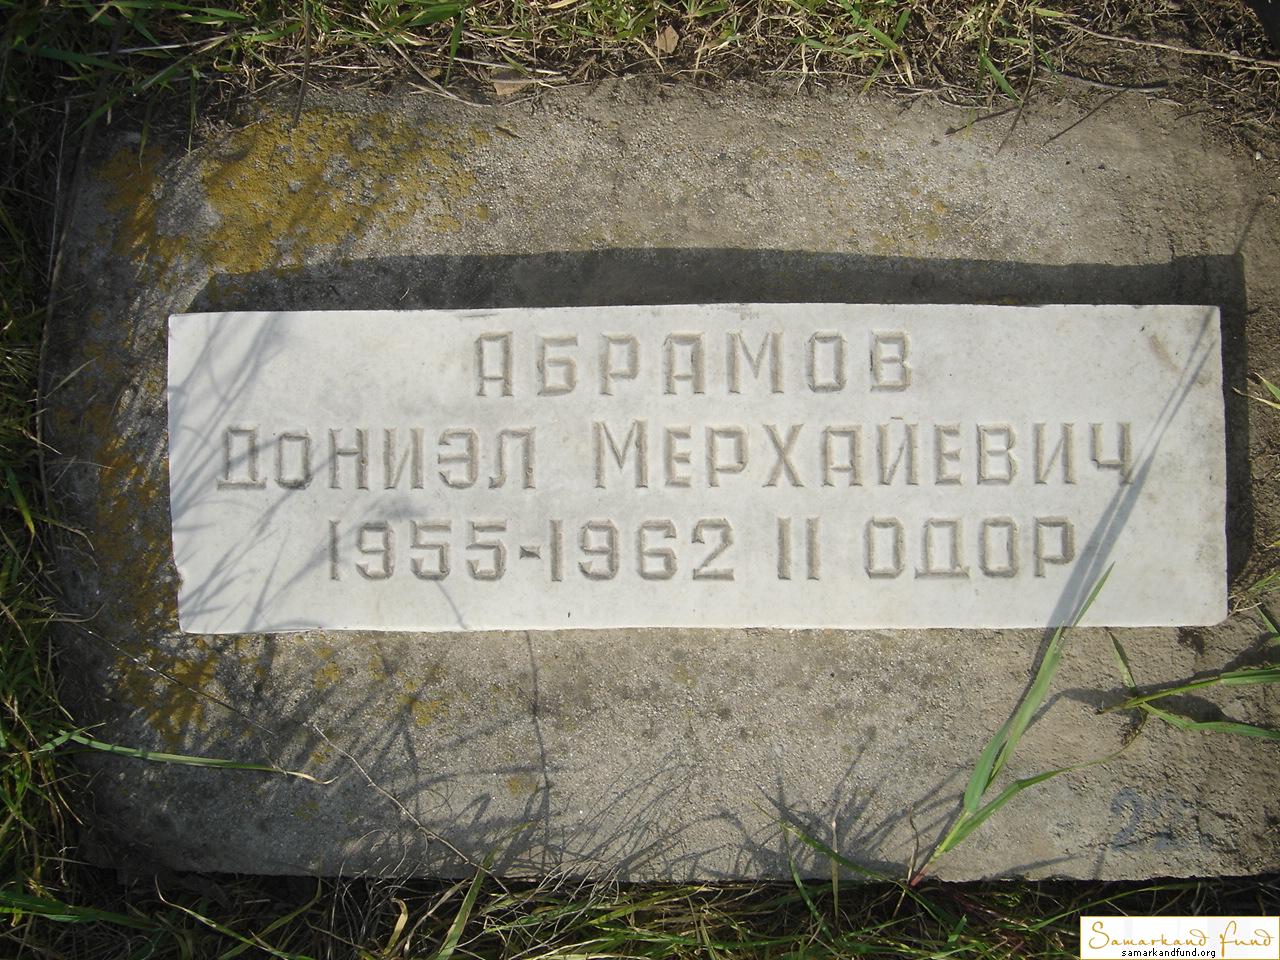 Абрамов Дониэл Мерхайевич 1955 - 1962   2 - одор зах.221.121   №29.JPG